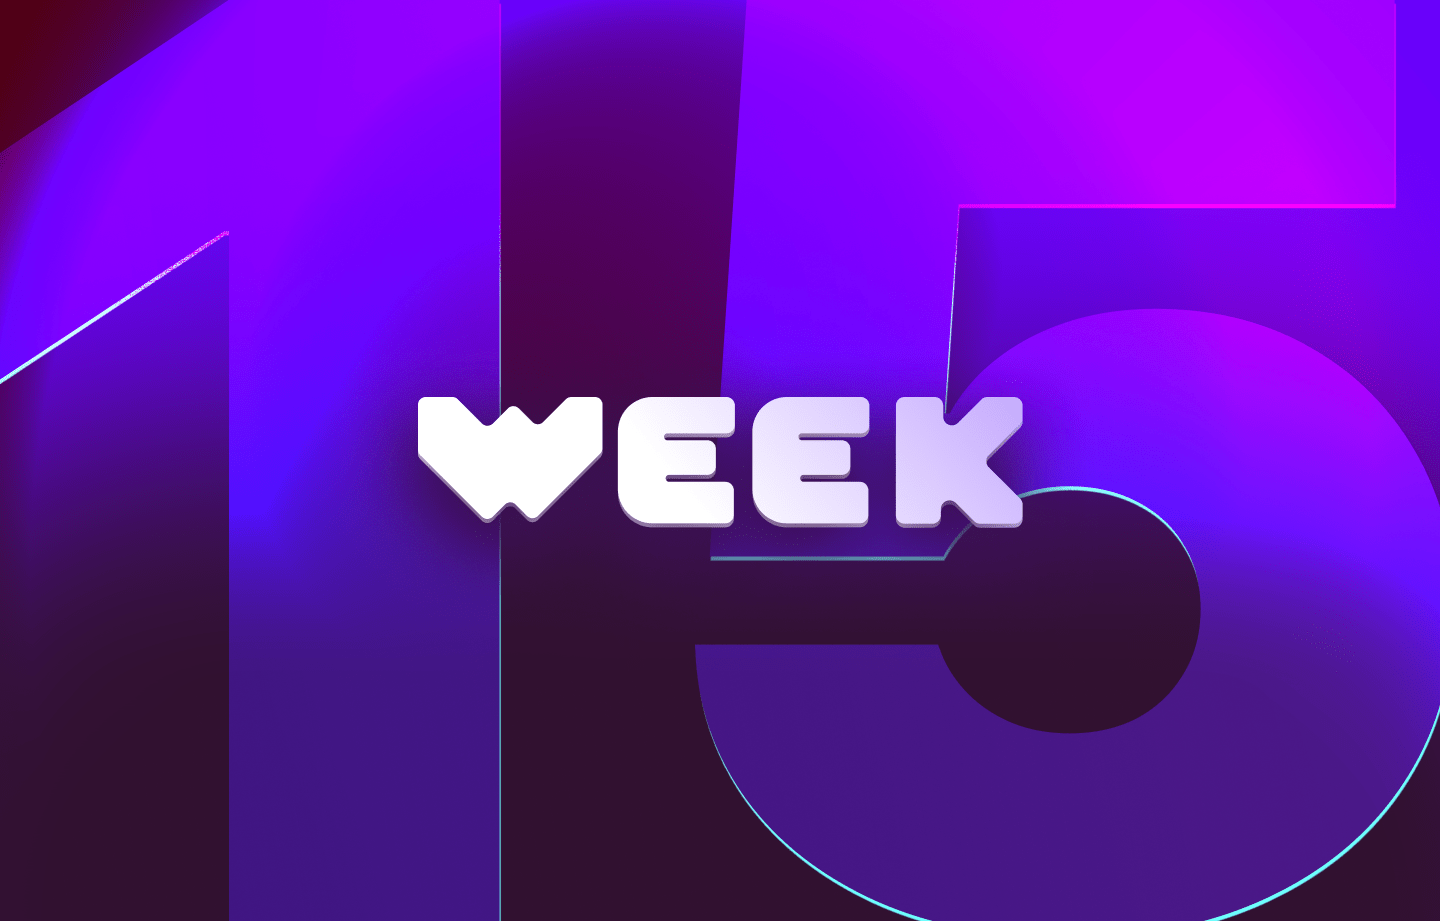 This week in web3 #15